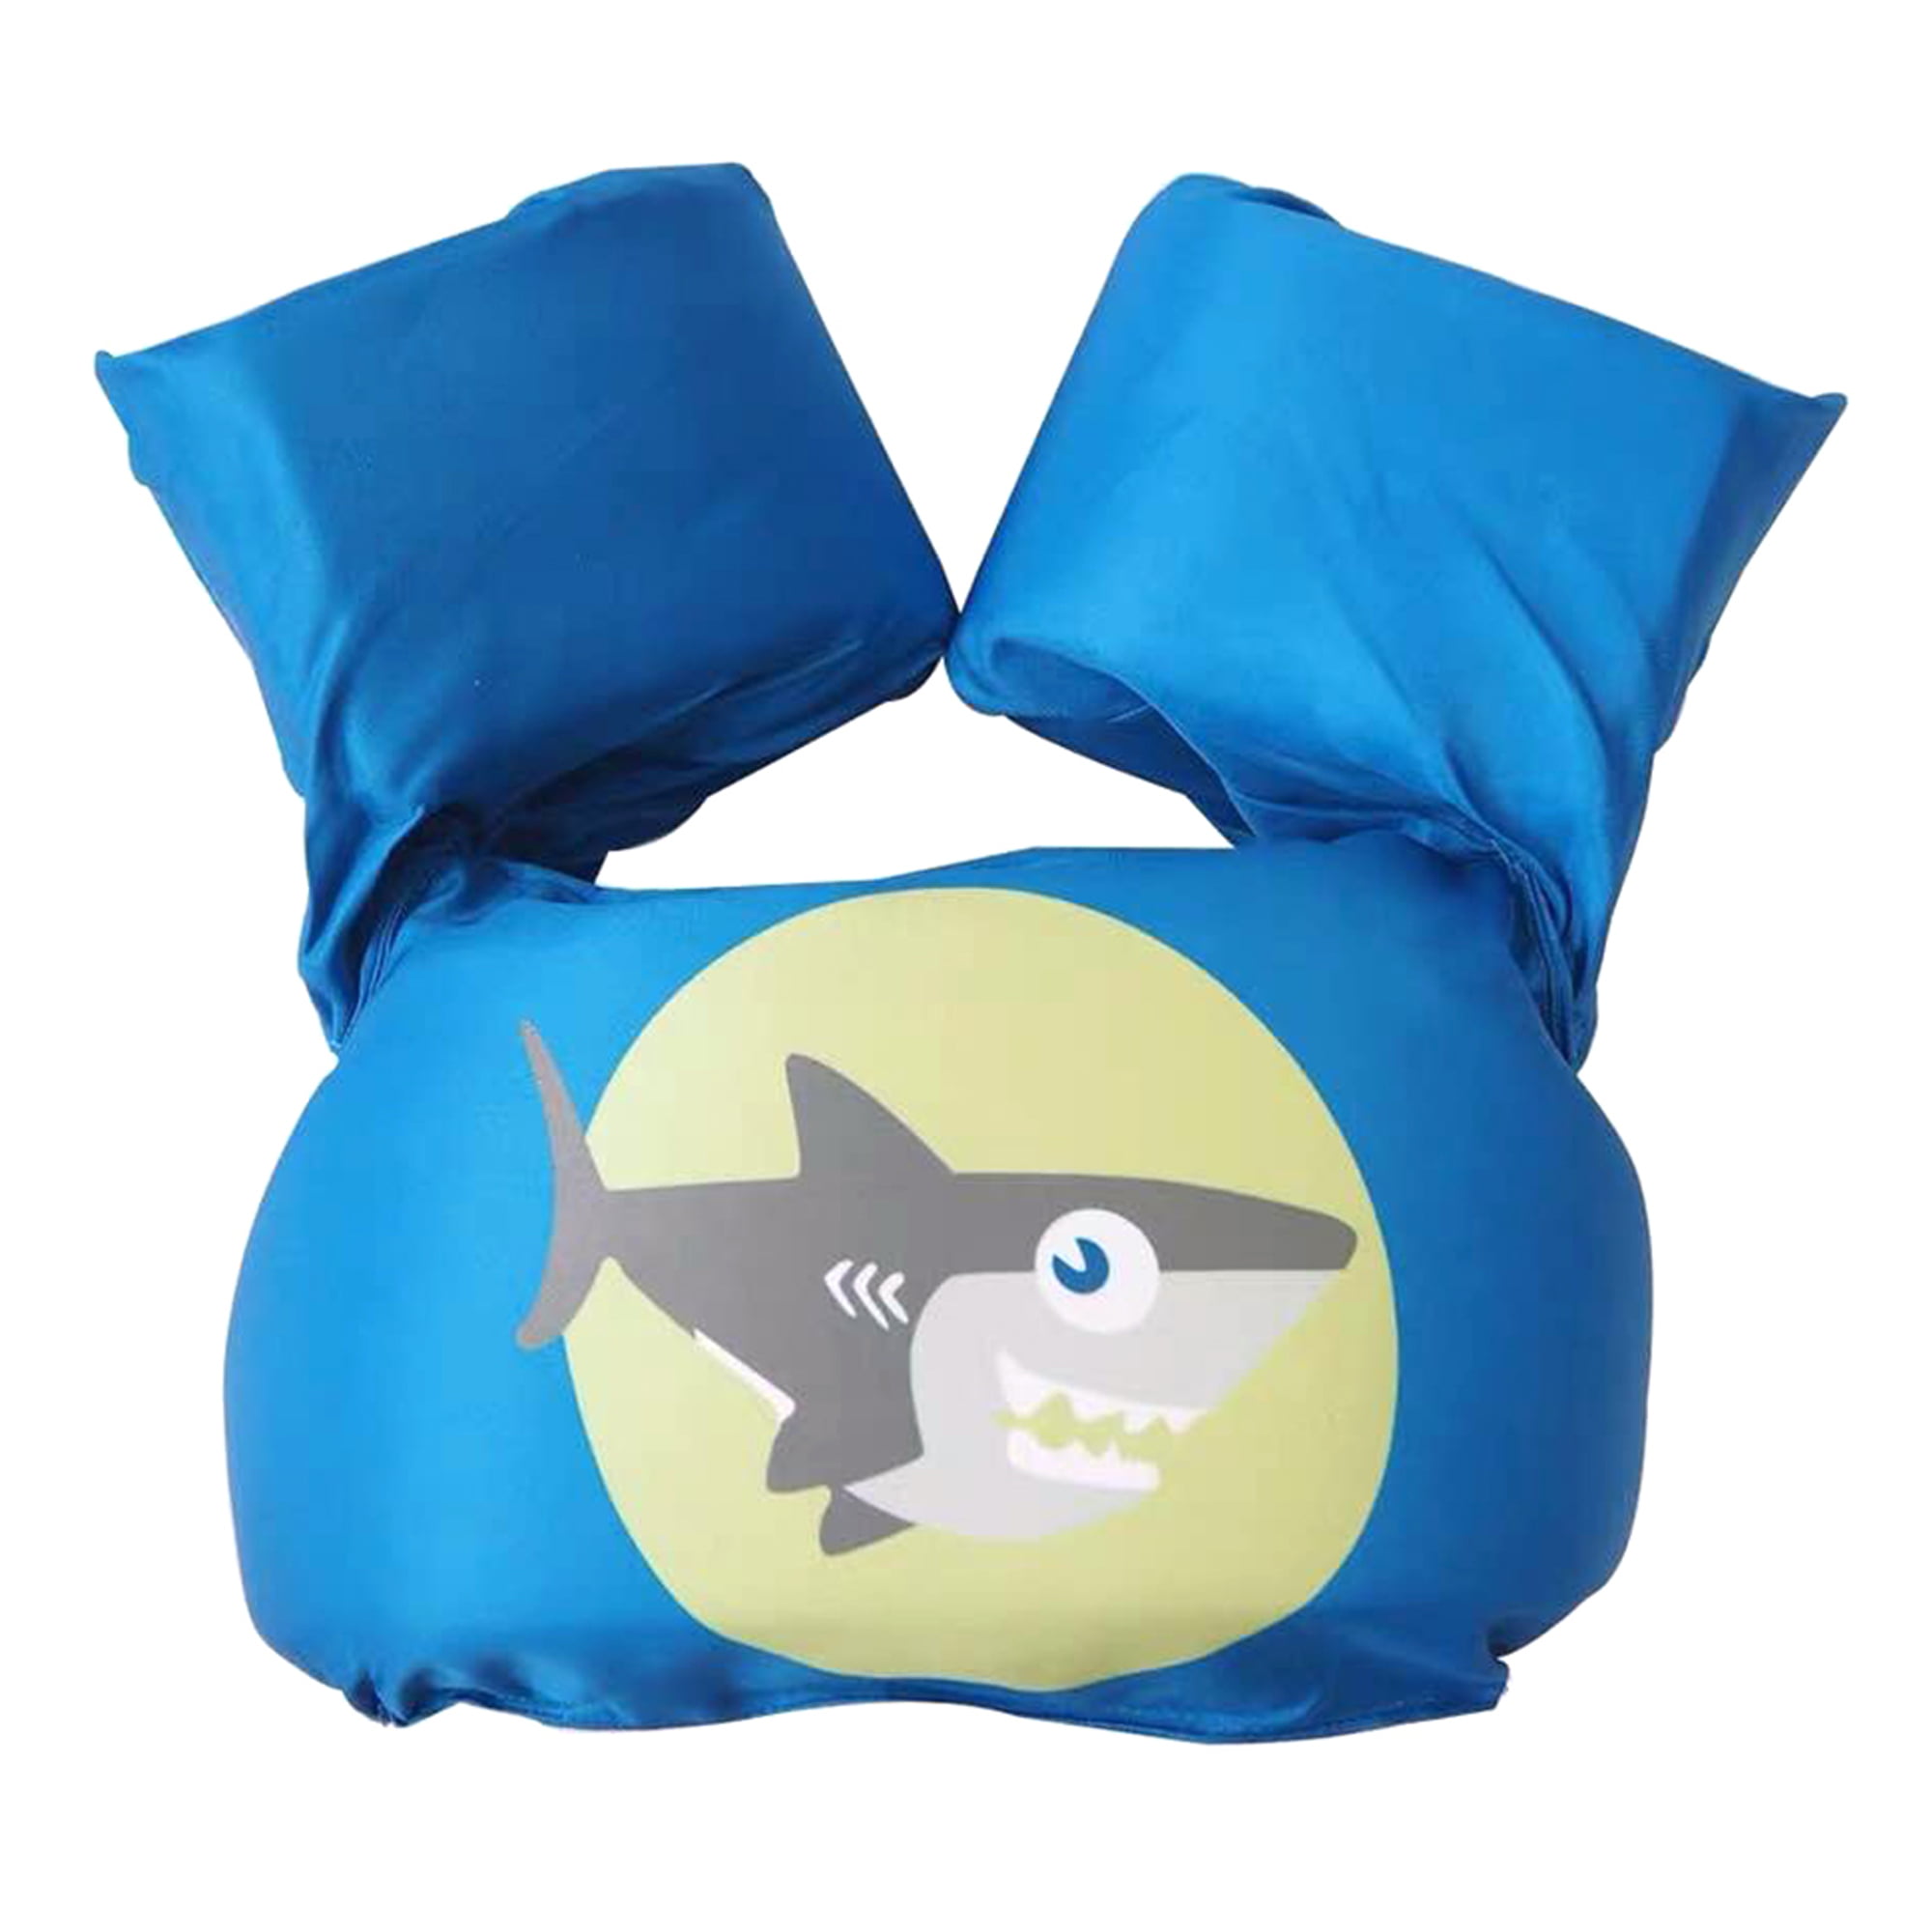 Childs 30 to 50 Lbs Puddle Jumper for sale online Stearns 3d Shark Life Jacket Flotation Vest 